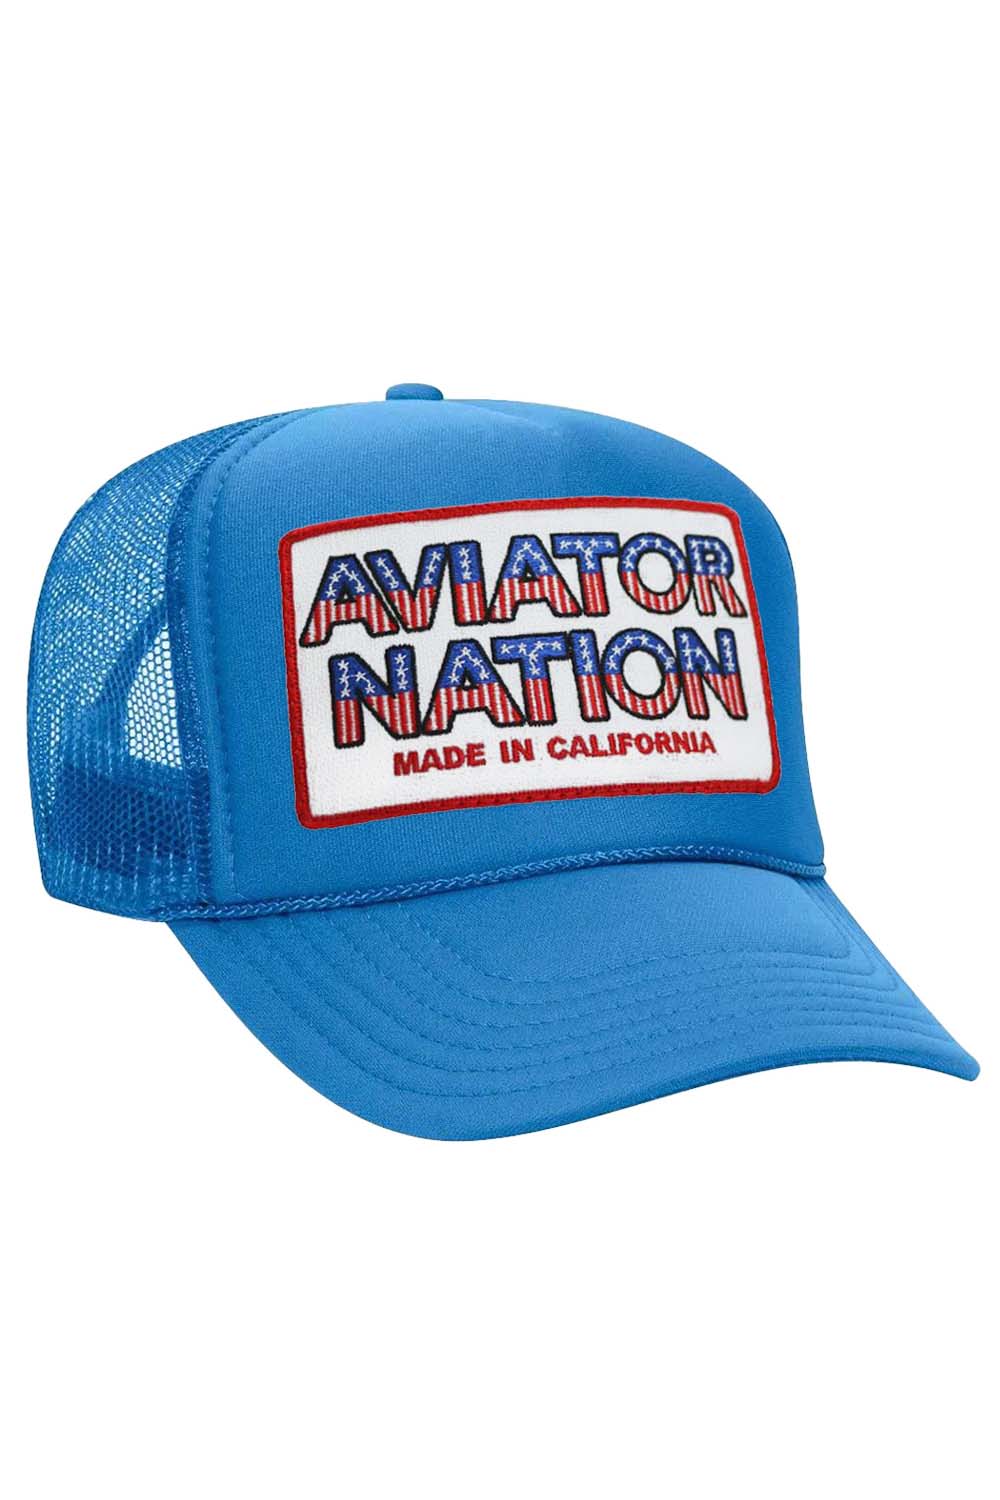 AVIATOR NATION USA PATRIOTIC VINTAGE TRUCKER HAT HATS Aviator Nation OS LIGHT BLUE 